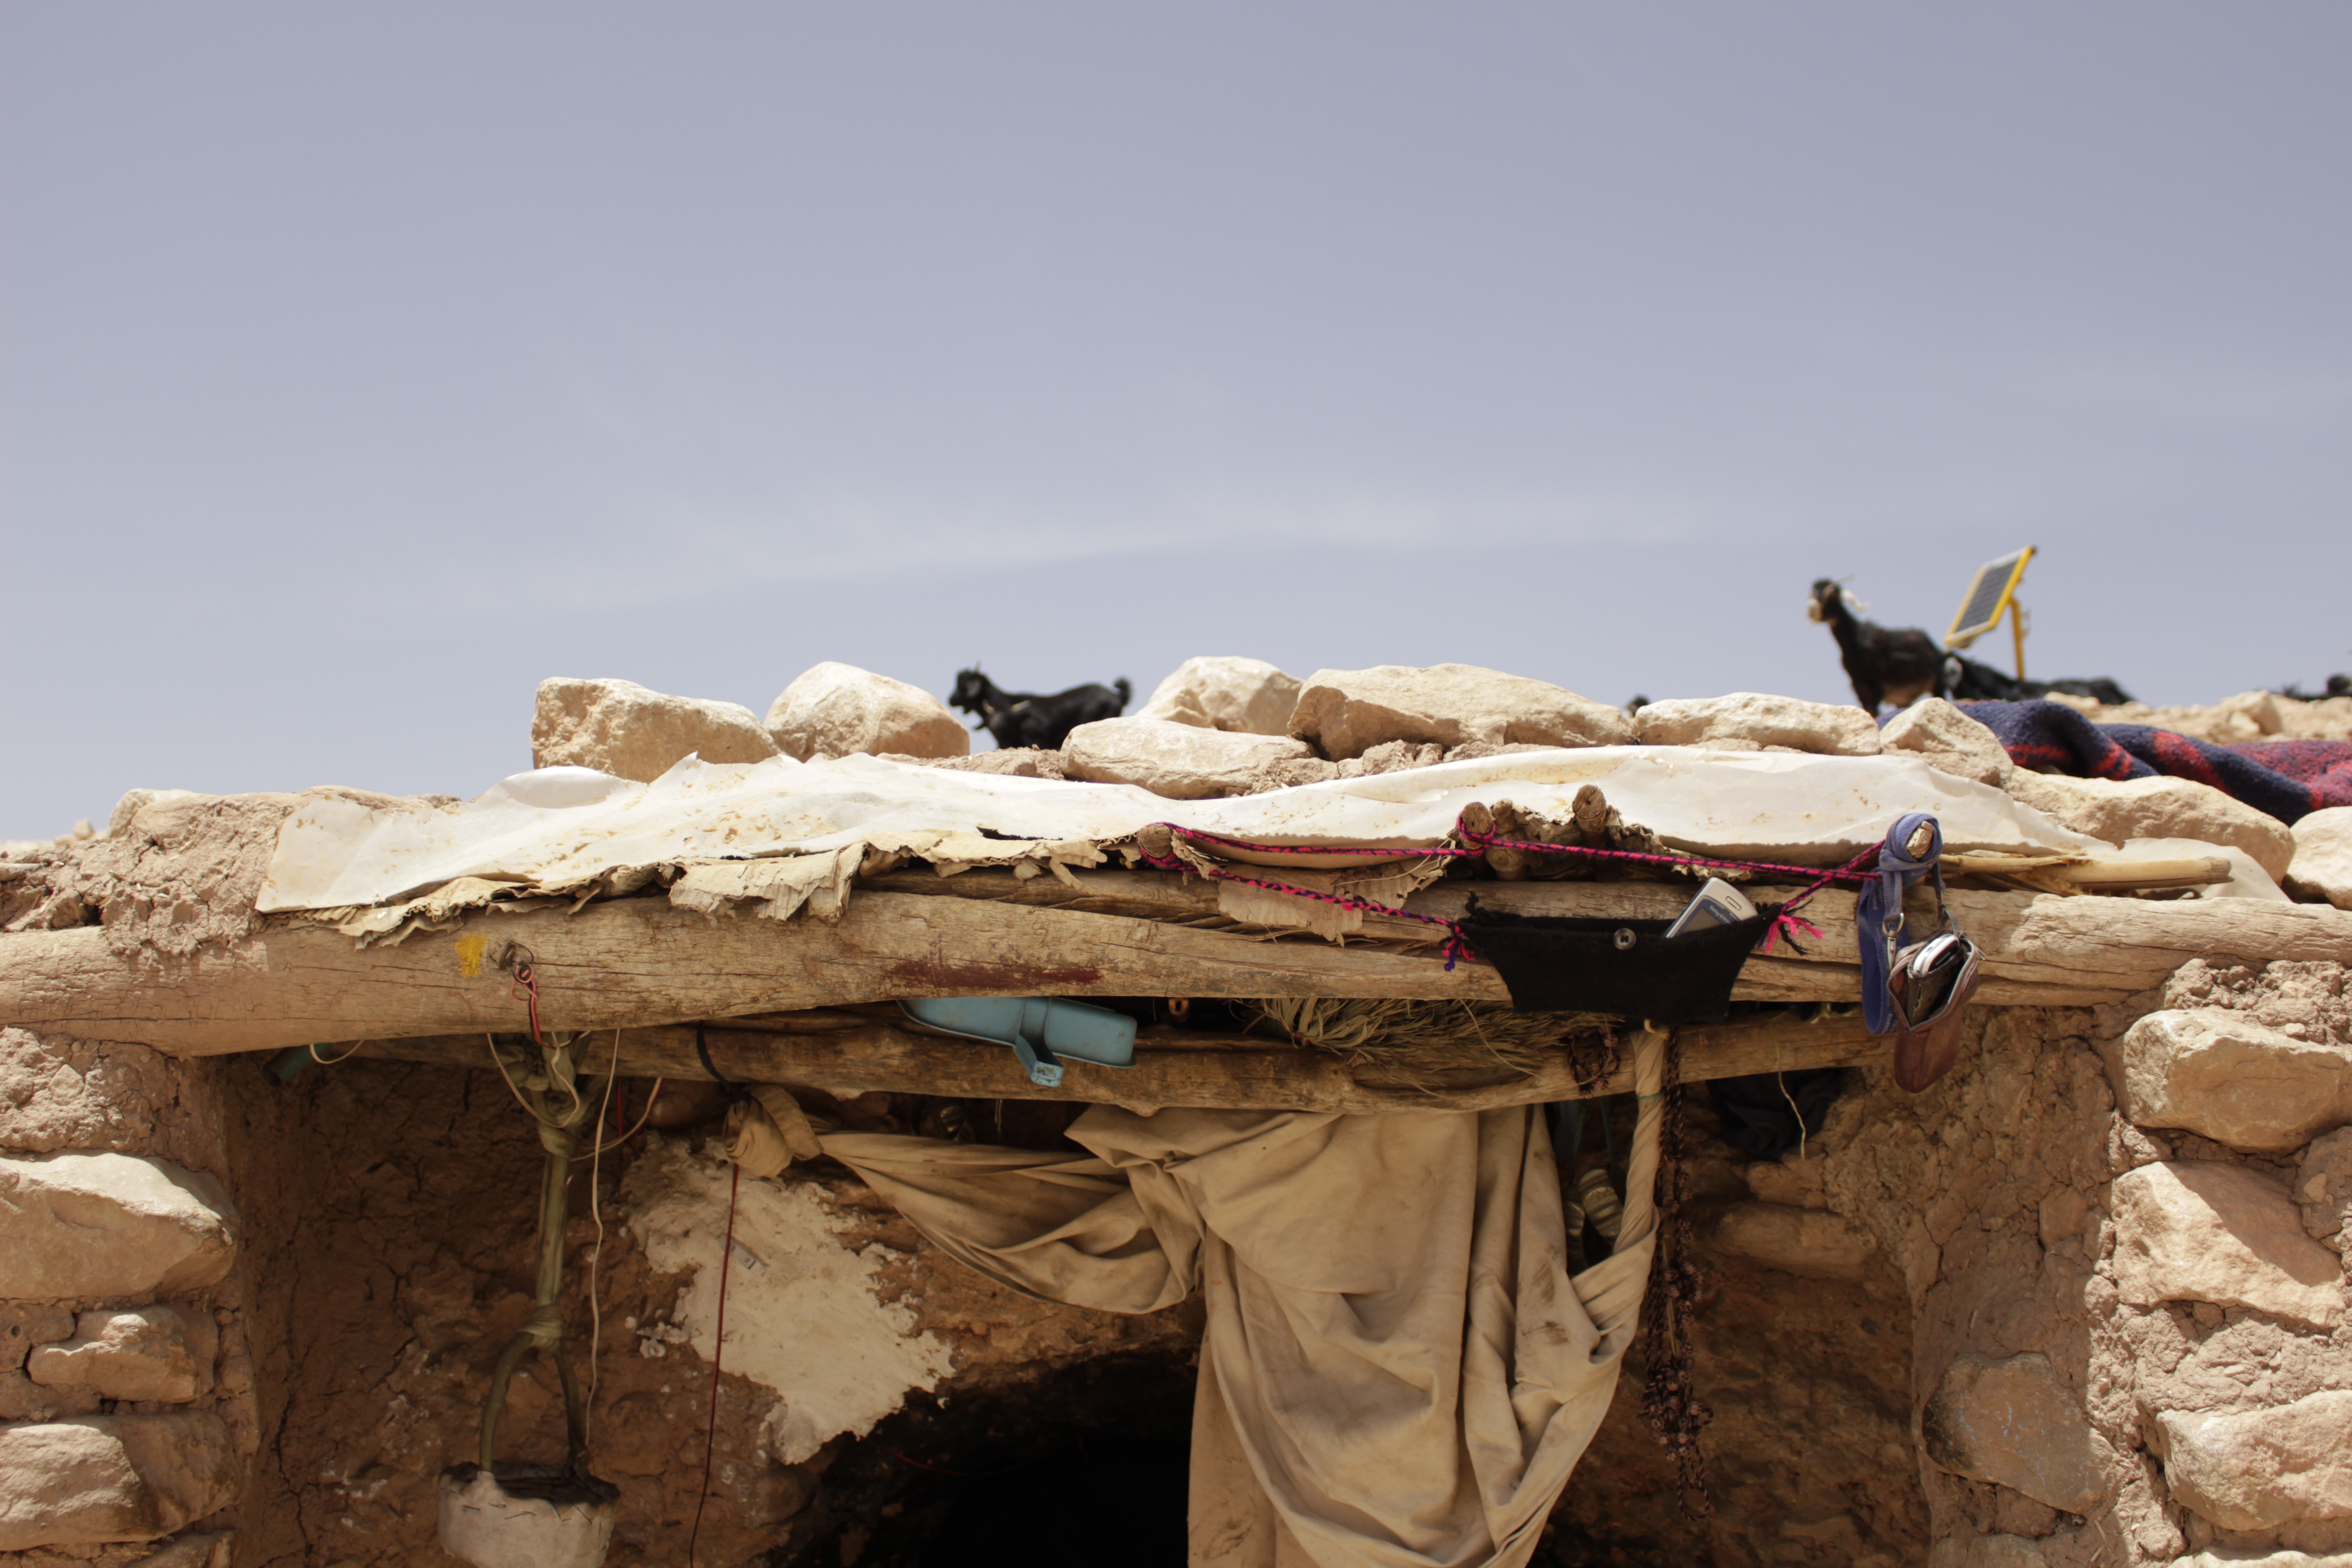 حقوق الصورة: وصال الشيخ - المغرب: تعيش عائشة مع ابنتها وزوجها وبعض أحفادها على بُعد ساعتين مشياً على الأقدام، إذا أخذنا الطريق من قرية "بوتغرار"، جنوب شرق المغرب، إلى الجبال المجاورة لها.  